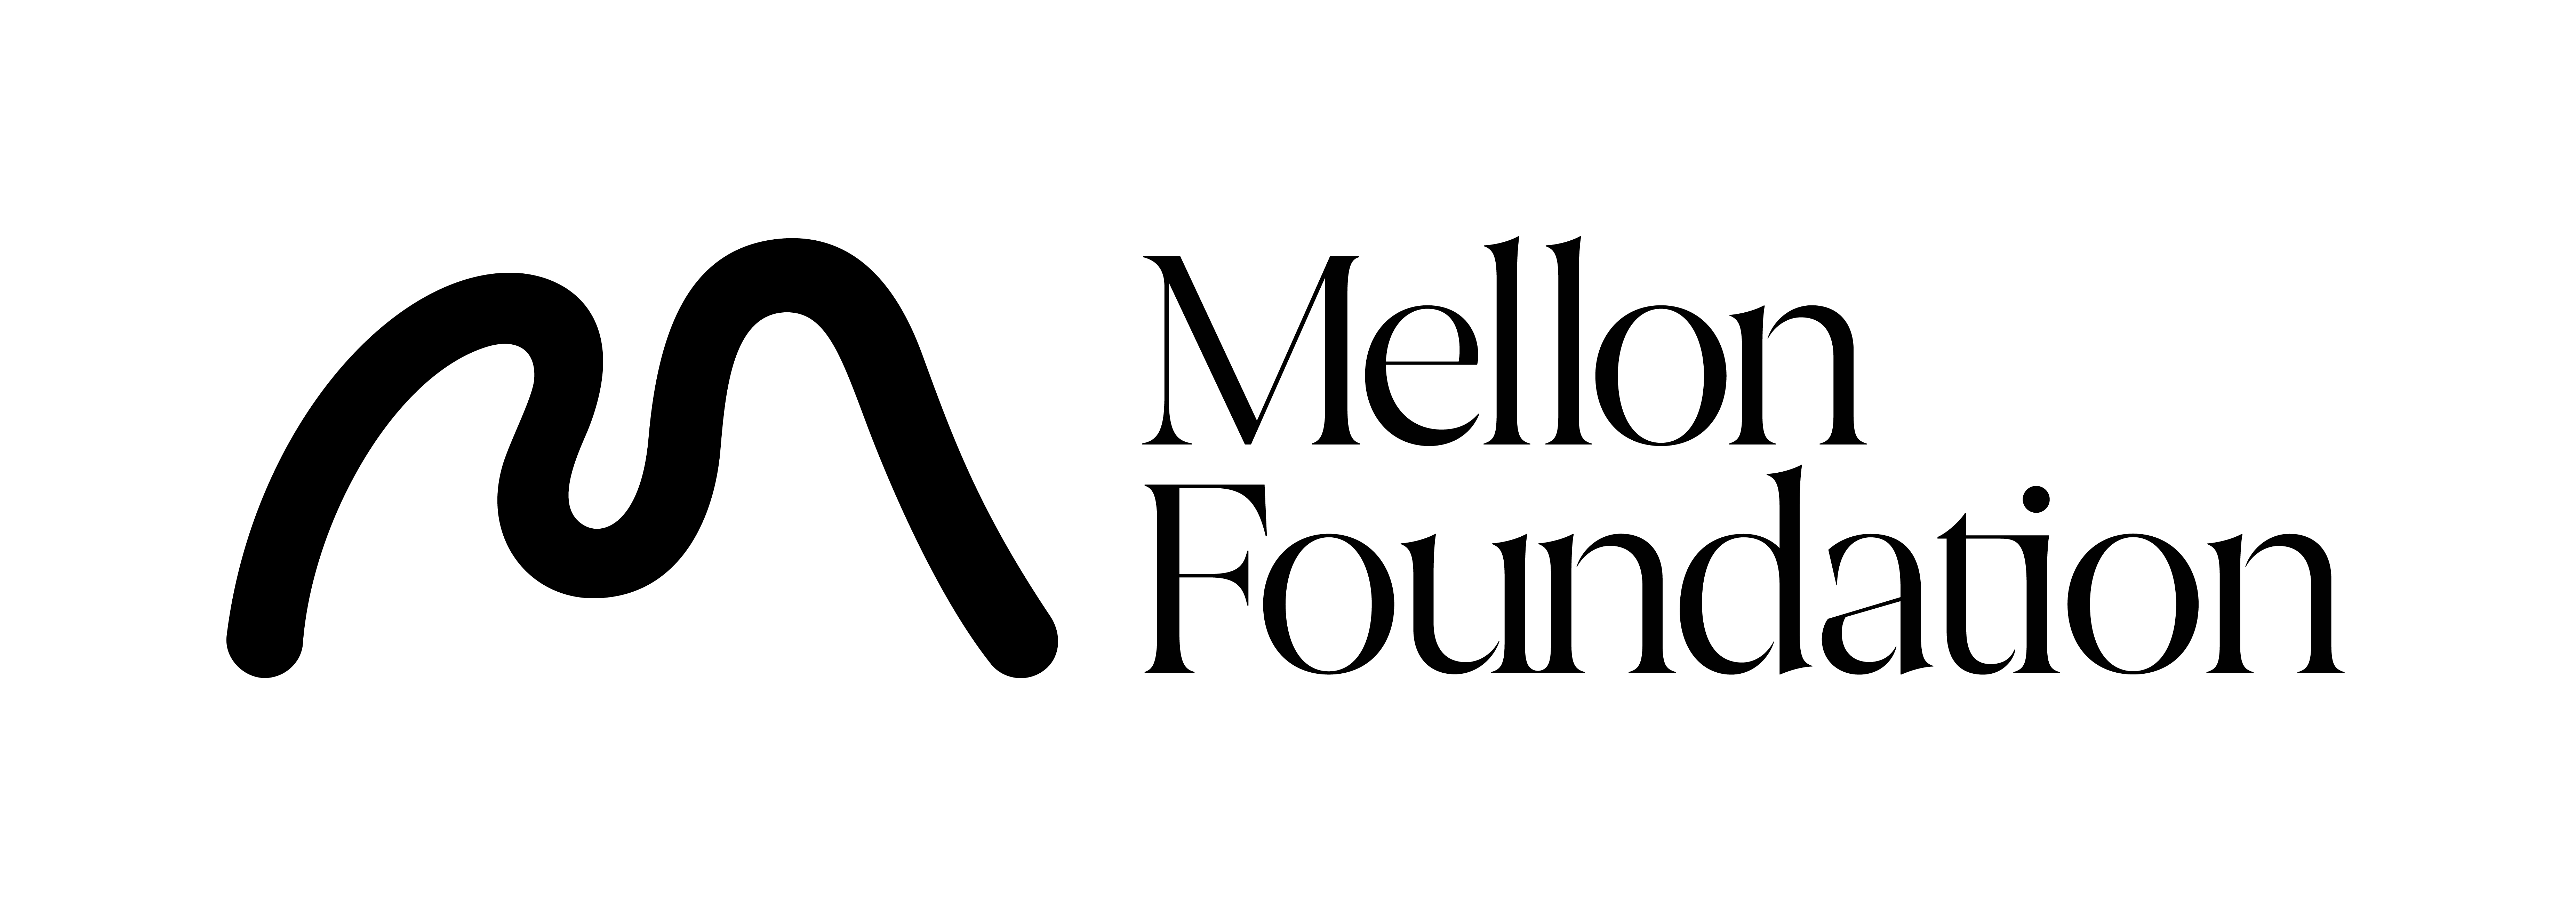 Mellon Logomark in Black and White